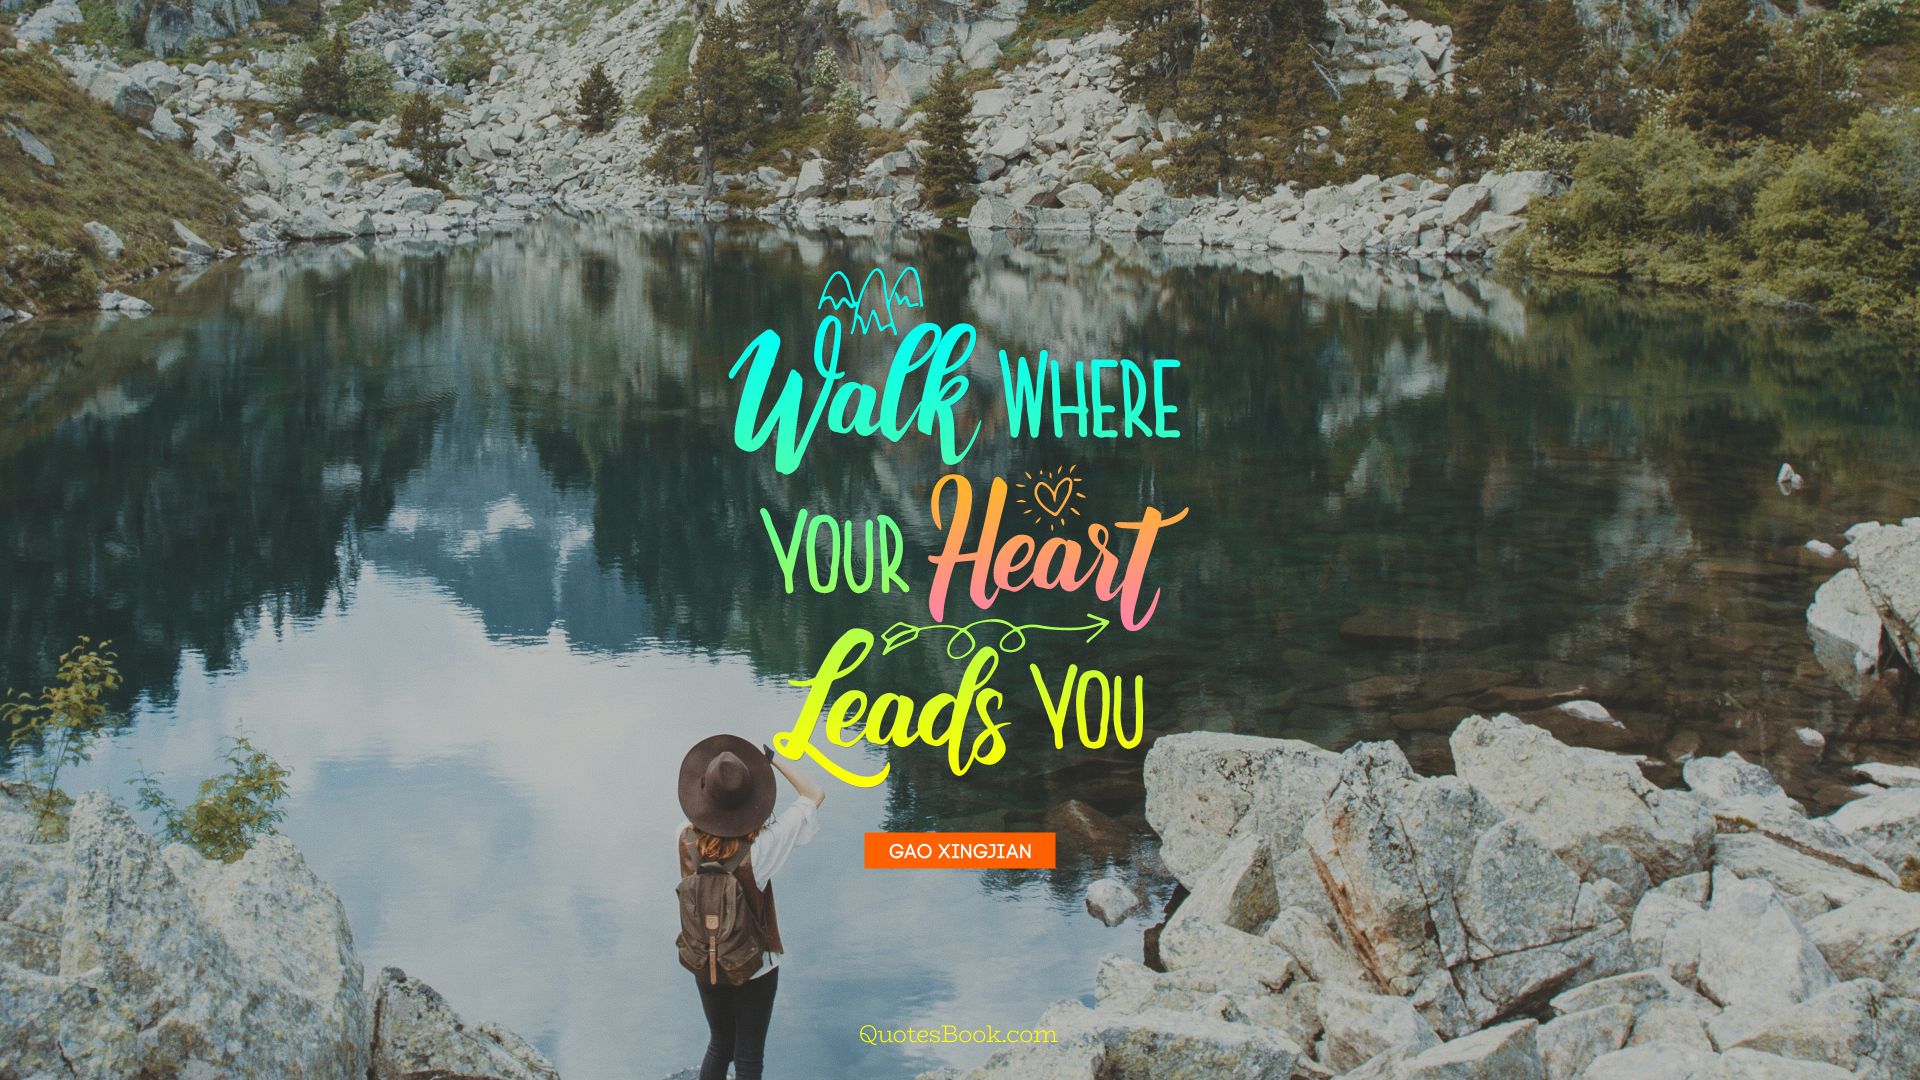 Walk where your heart leads you. - Quote by Gao Xingjian